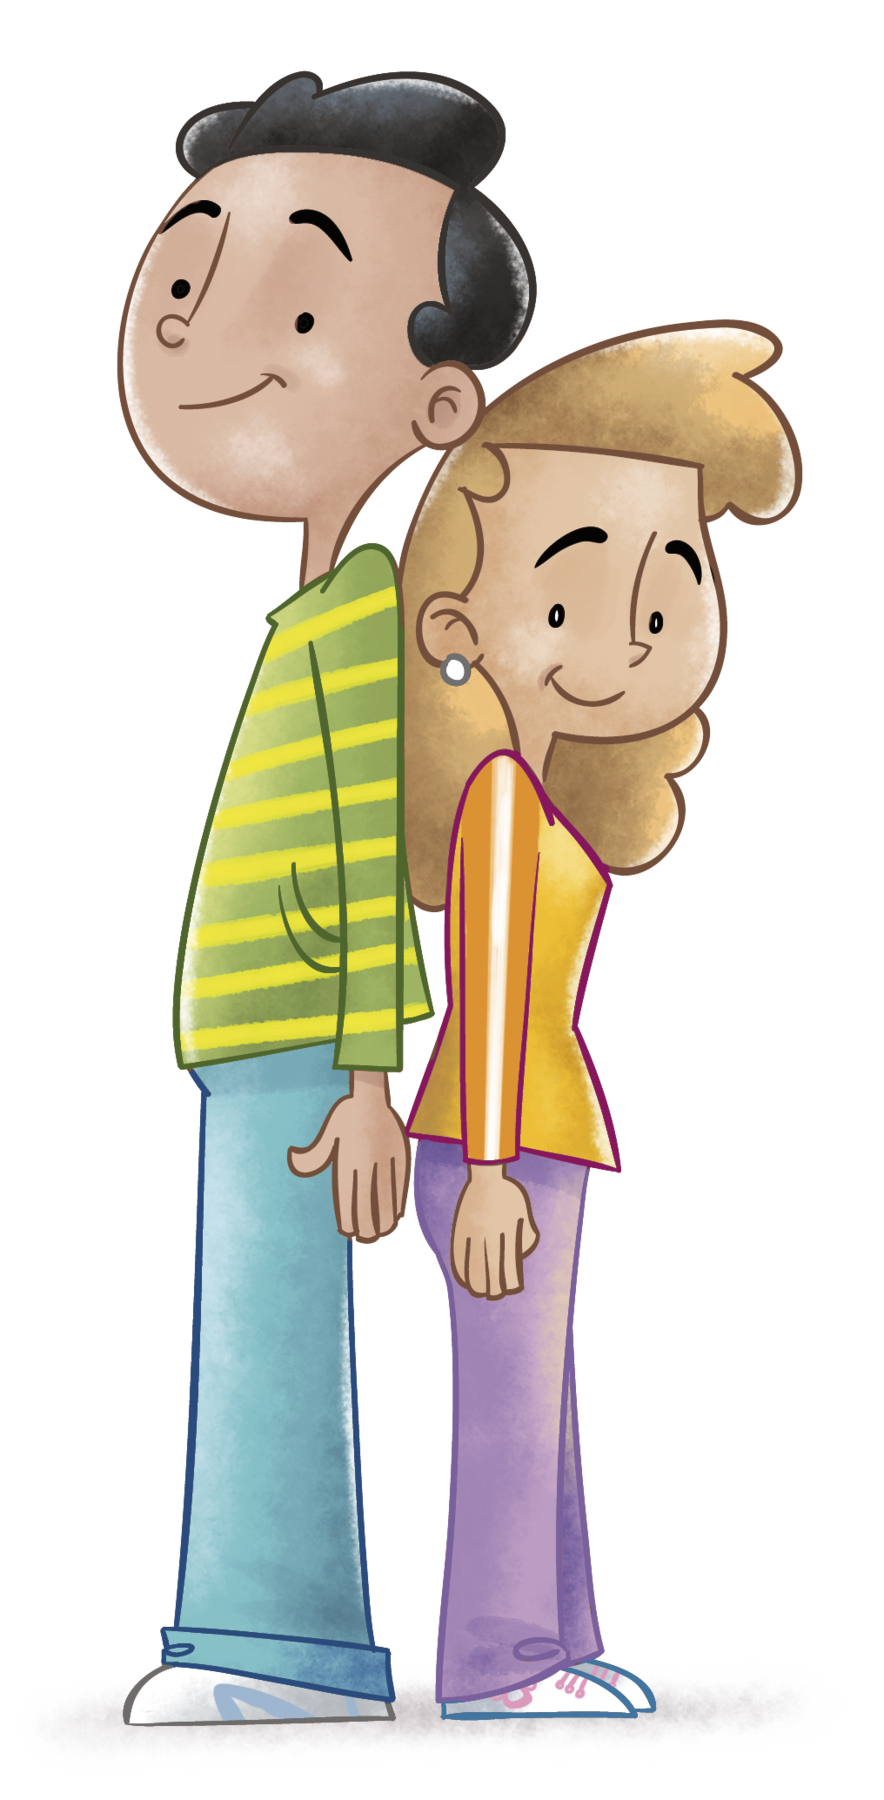 Ilustração. Um menino de cabelo preto, camiseta listrada horizontalmente nas cores verde e amarela e calça azul. Ele está em pé de costas para uma menina de cabelo castanho claro, camiseta laranja e calça roxa. O menino é mais alto que a menina.